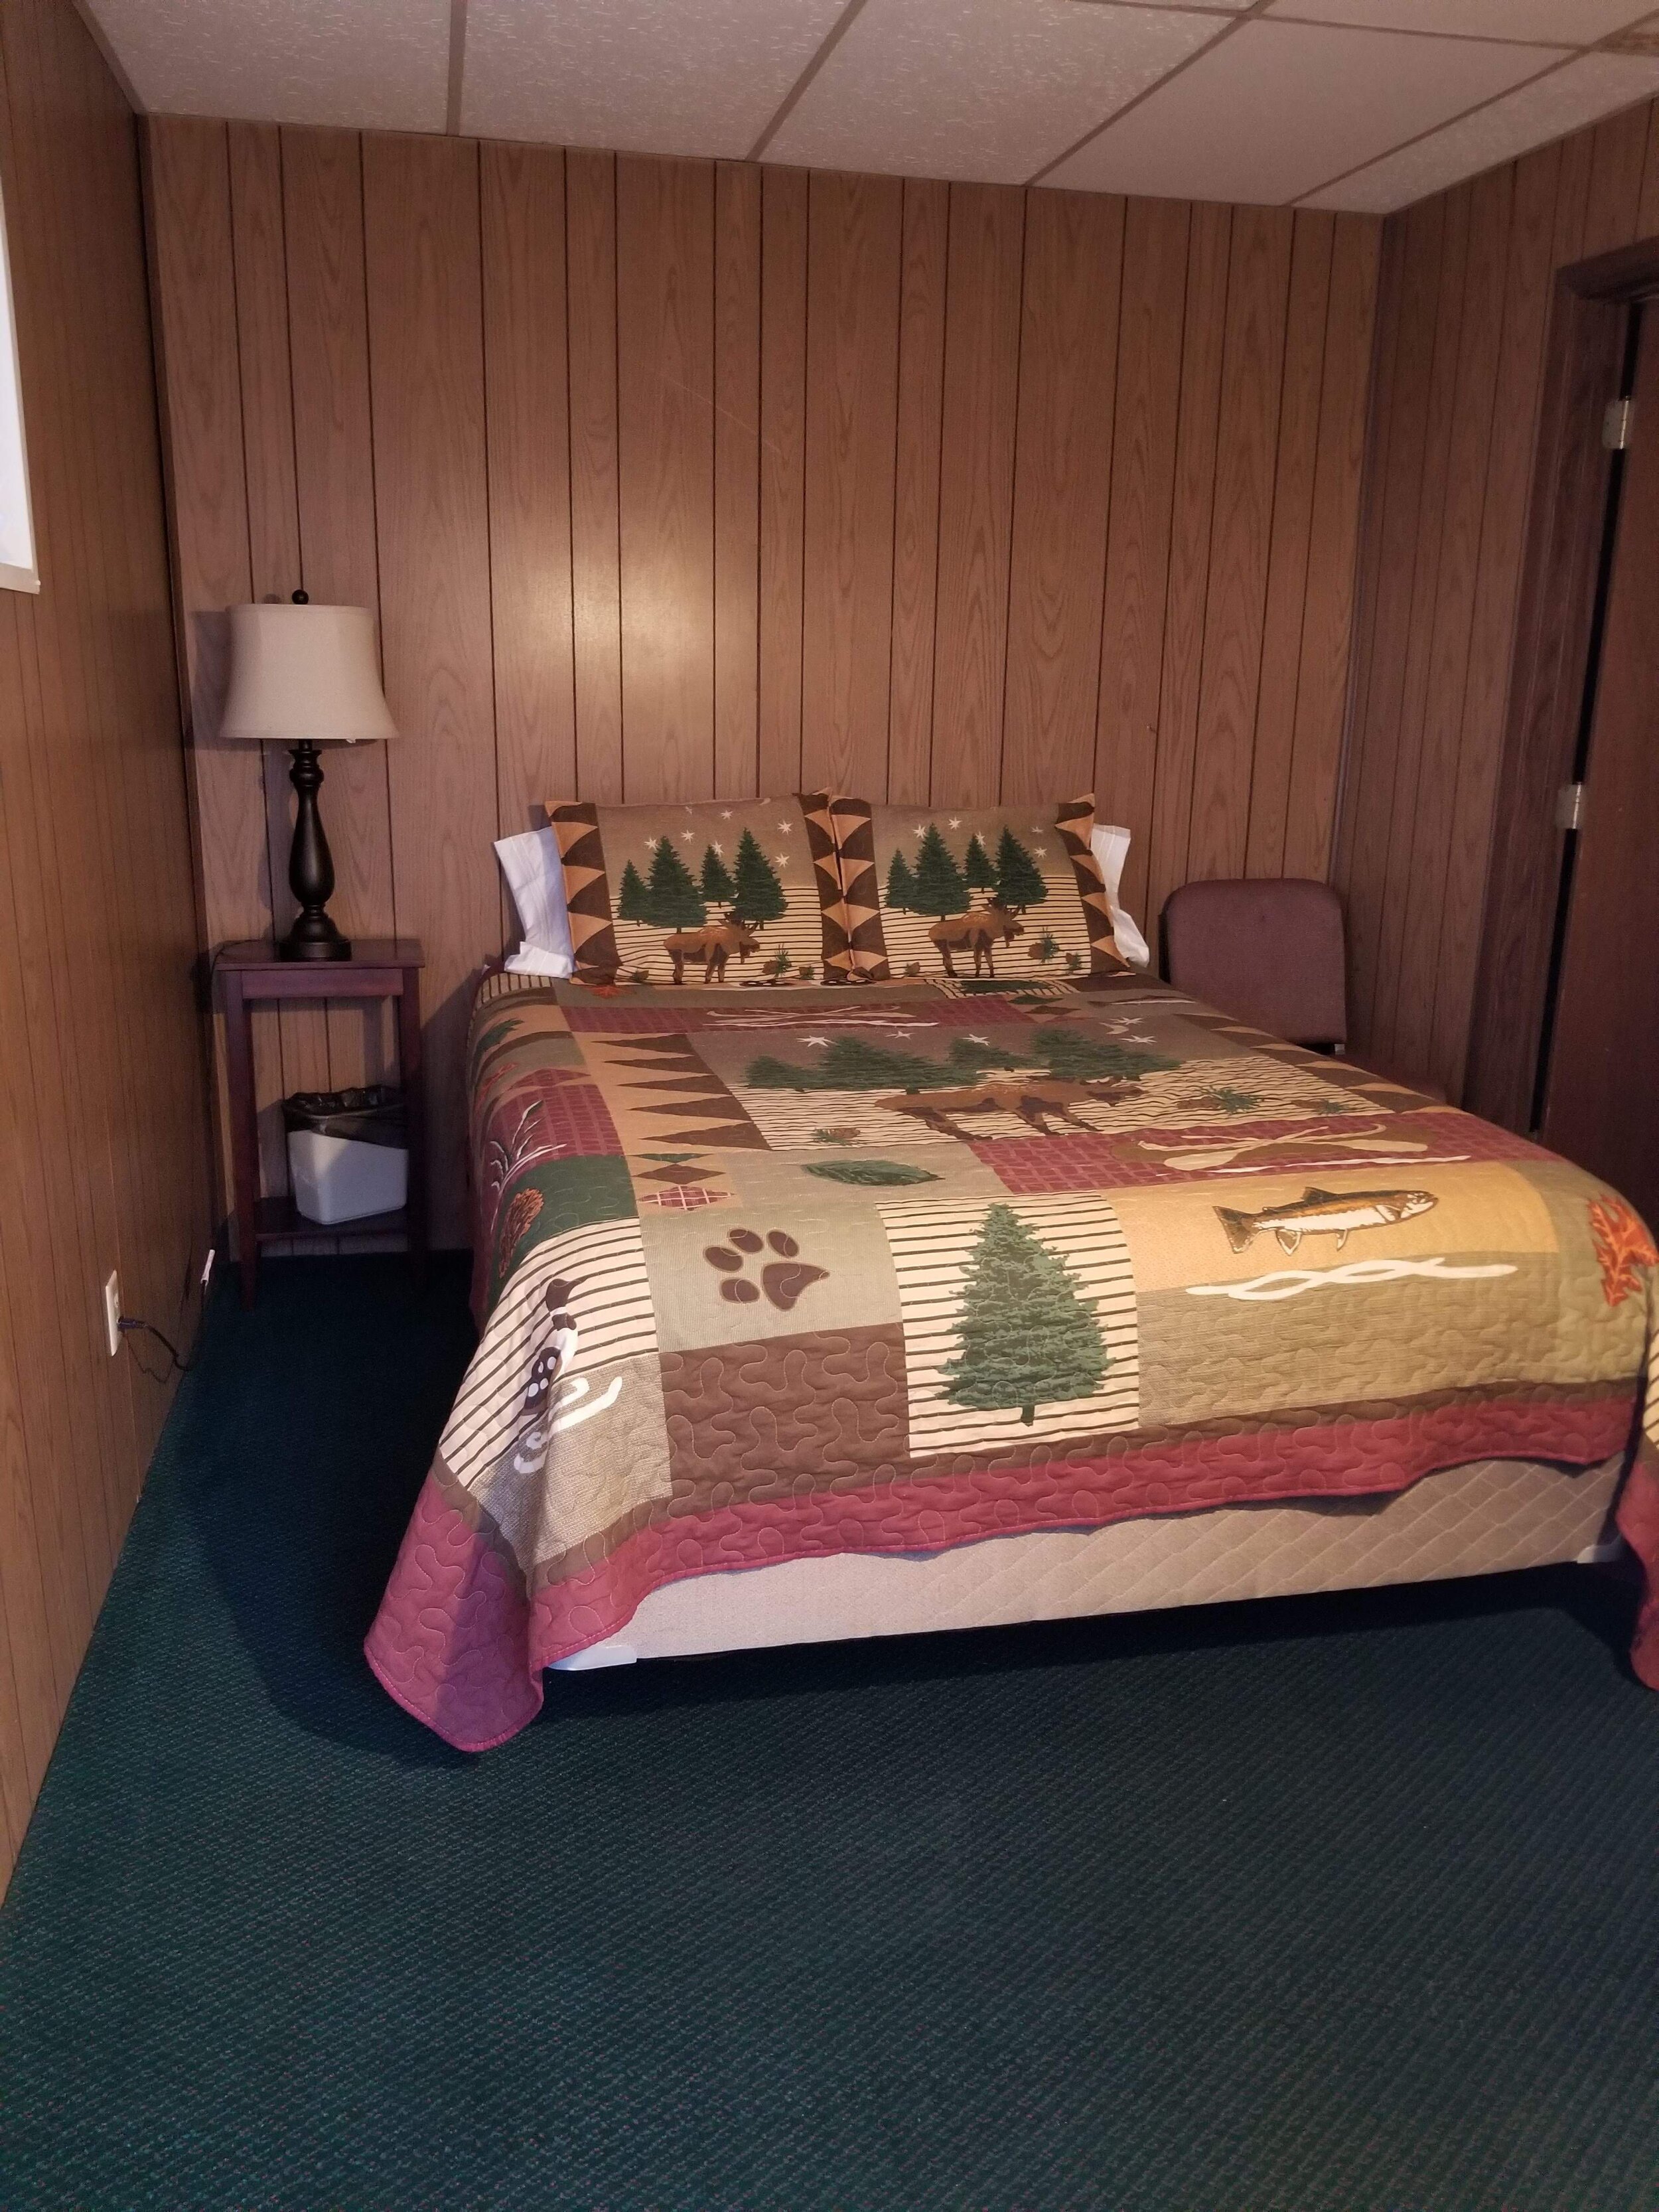 Motel Queen Room.jpg